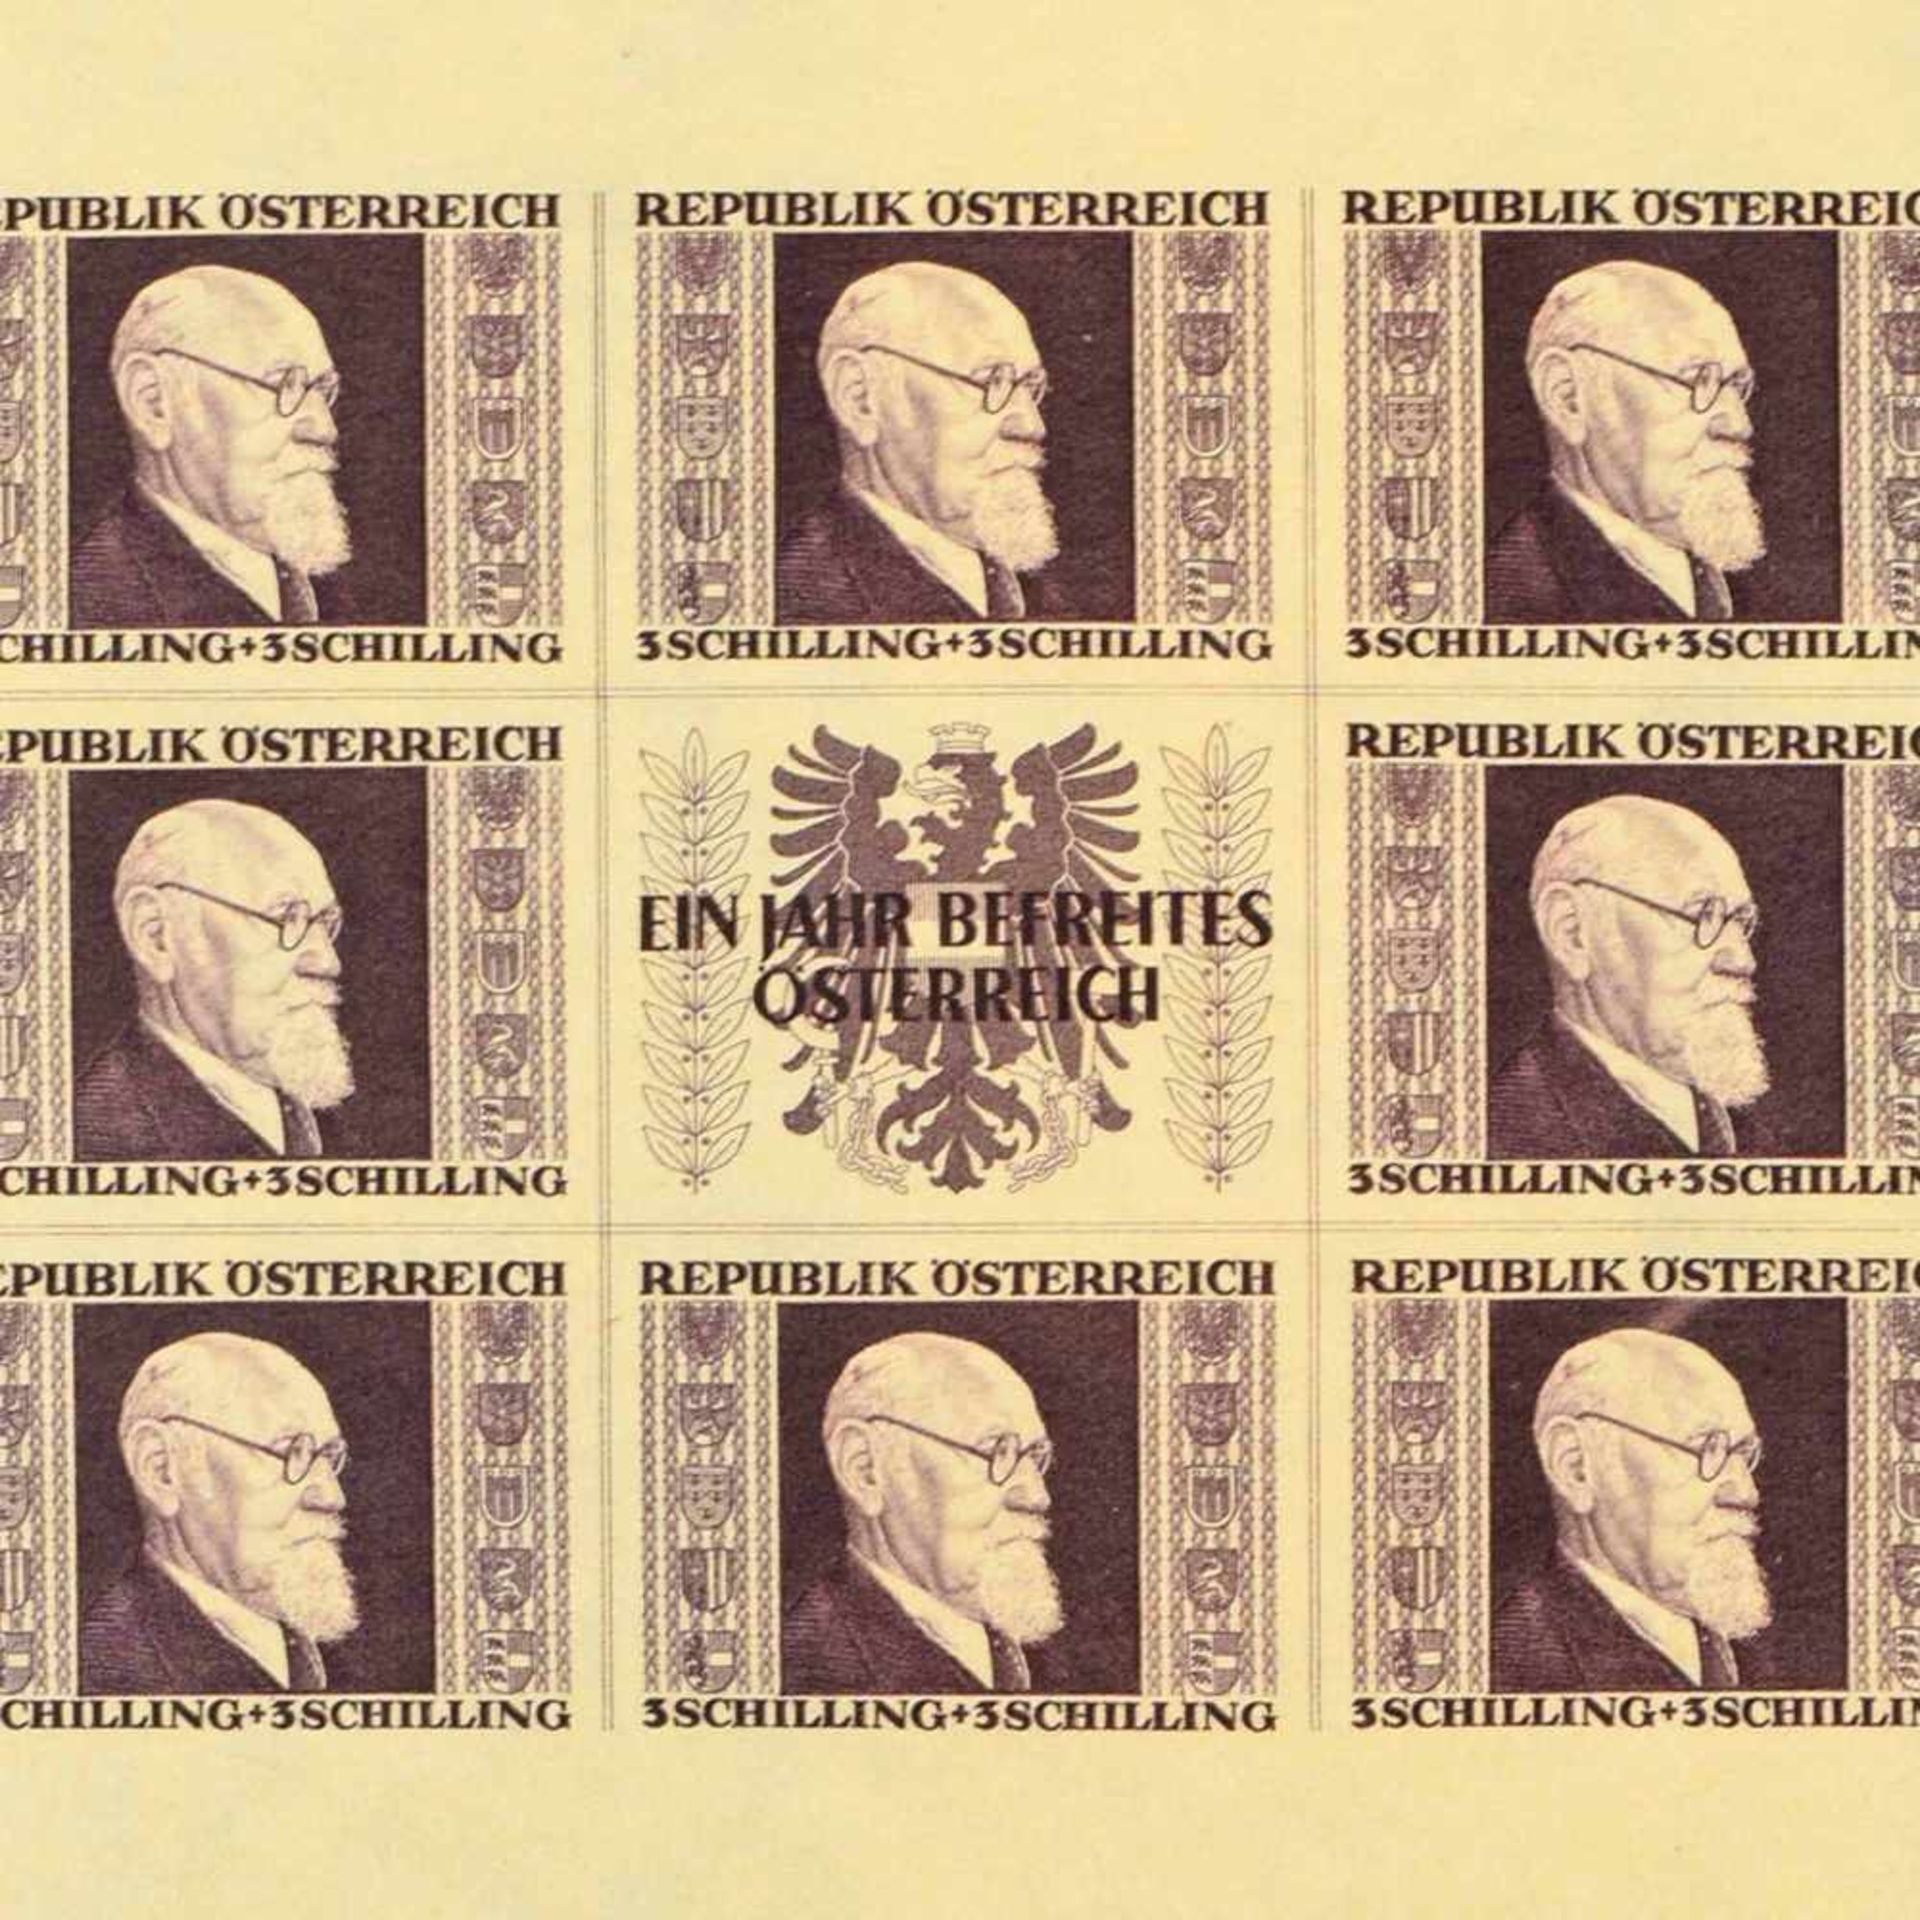 Briefmarken Österreich 1946 postfrisch, insg. alle 4 Blockausgaben, sog. "Renner-Blöcke" (Kleinbogen